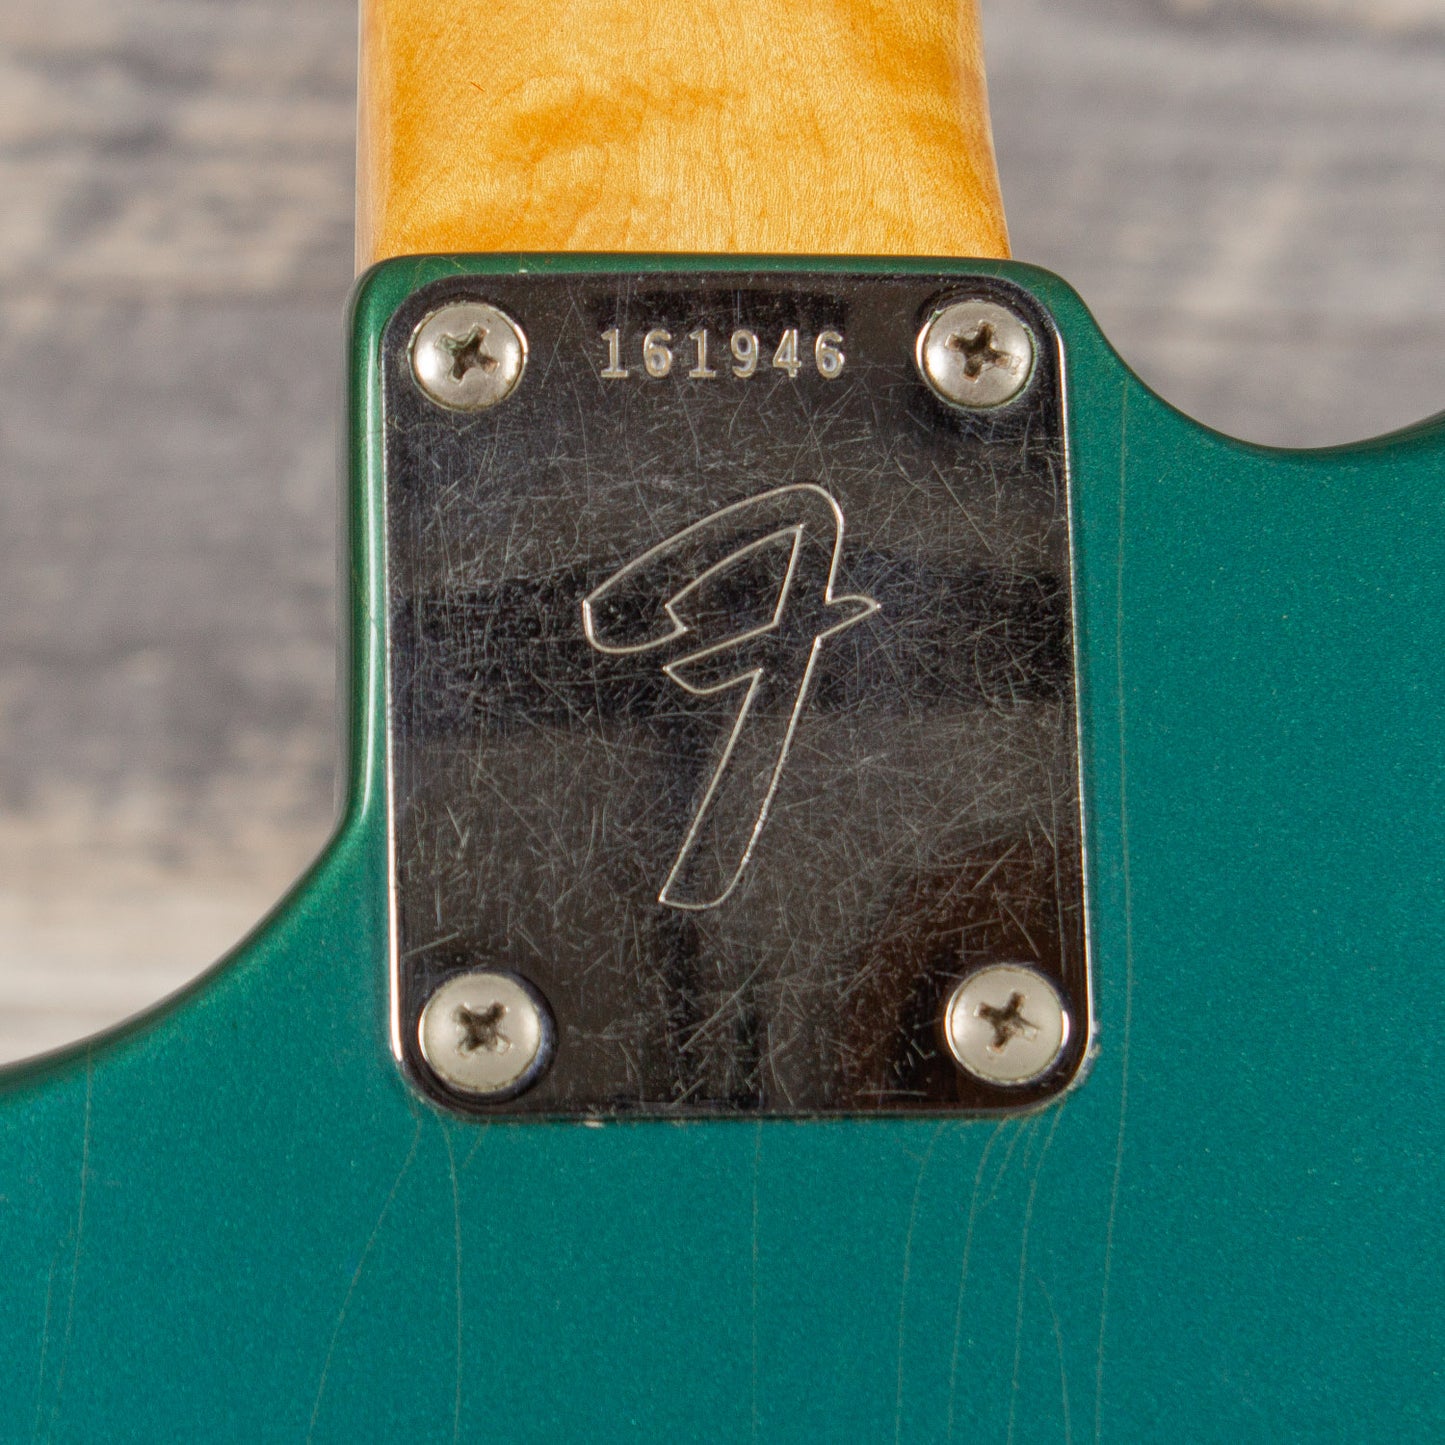 1966 Fender Jaguar - Lake Placid Blue